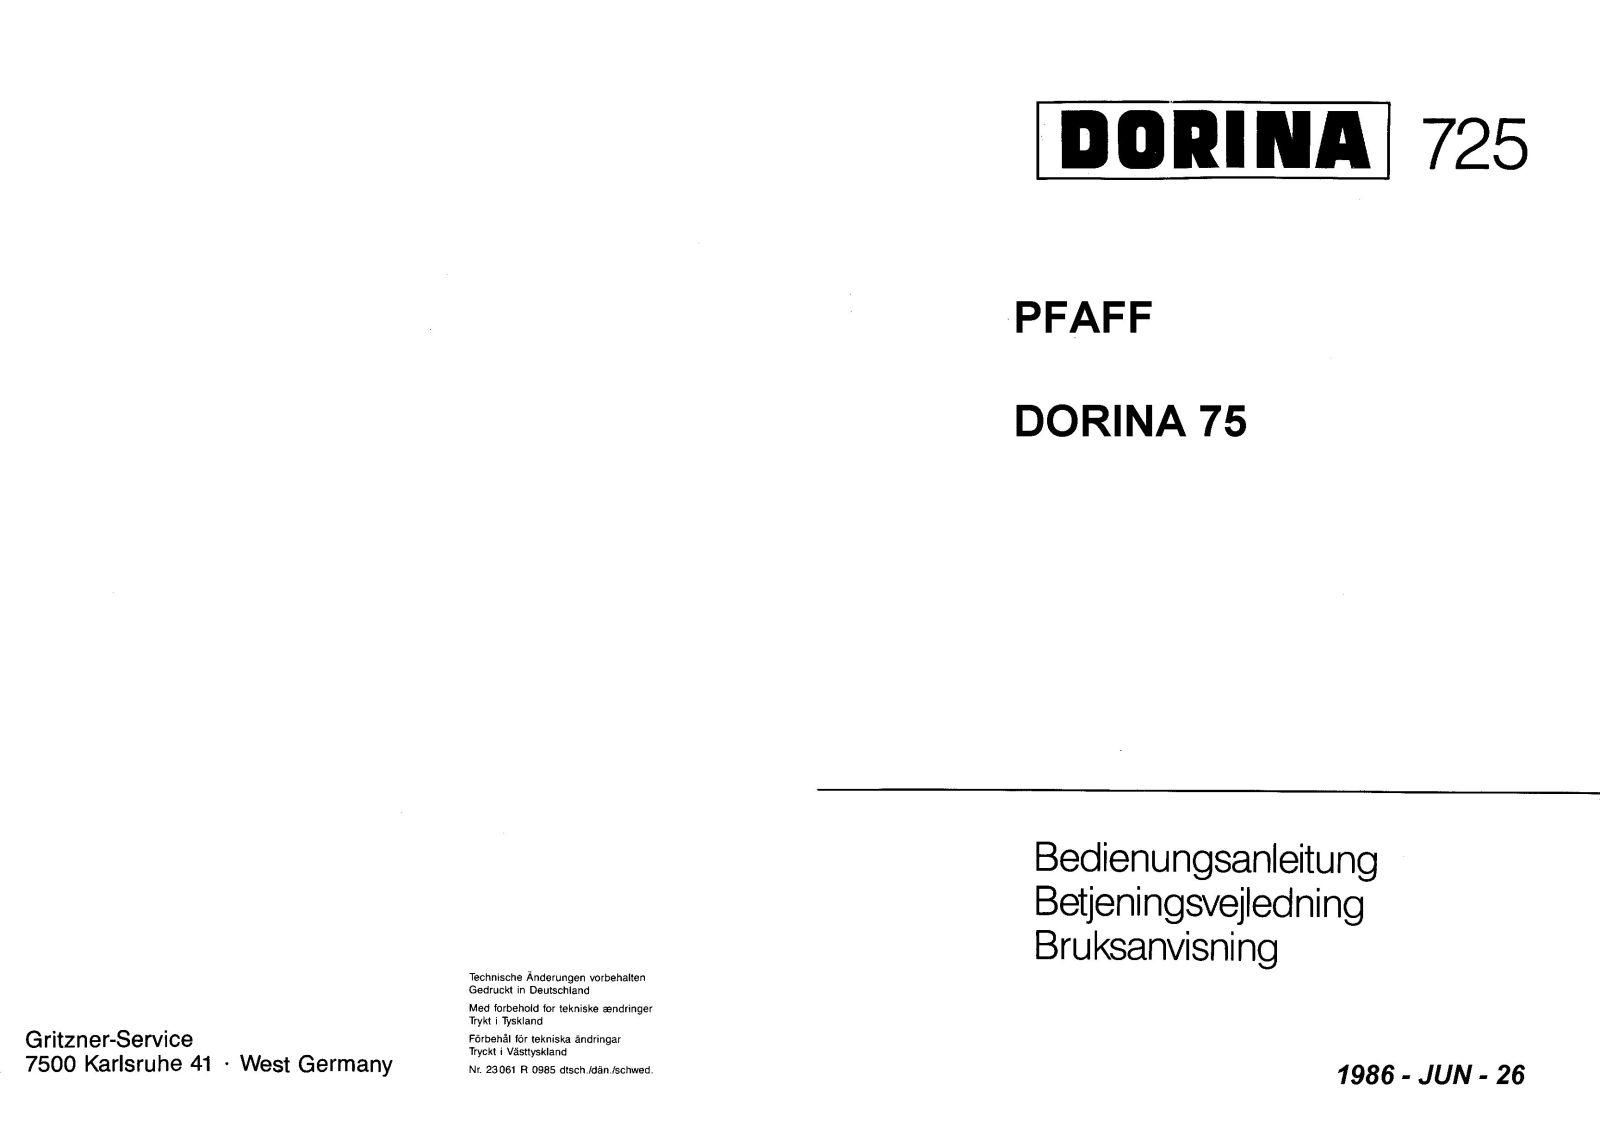 Pfaff DORINA 75, DORINA 725 Manual